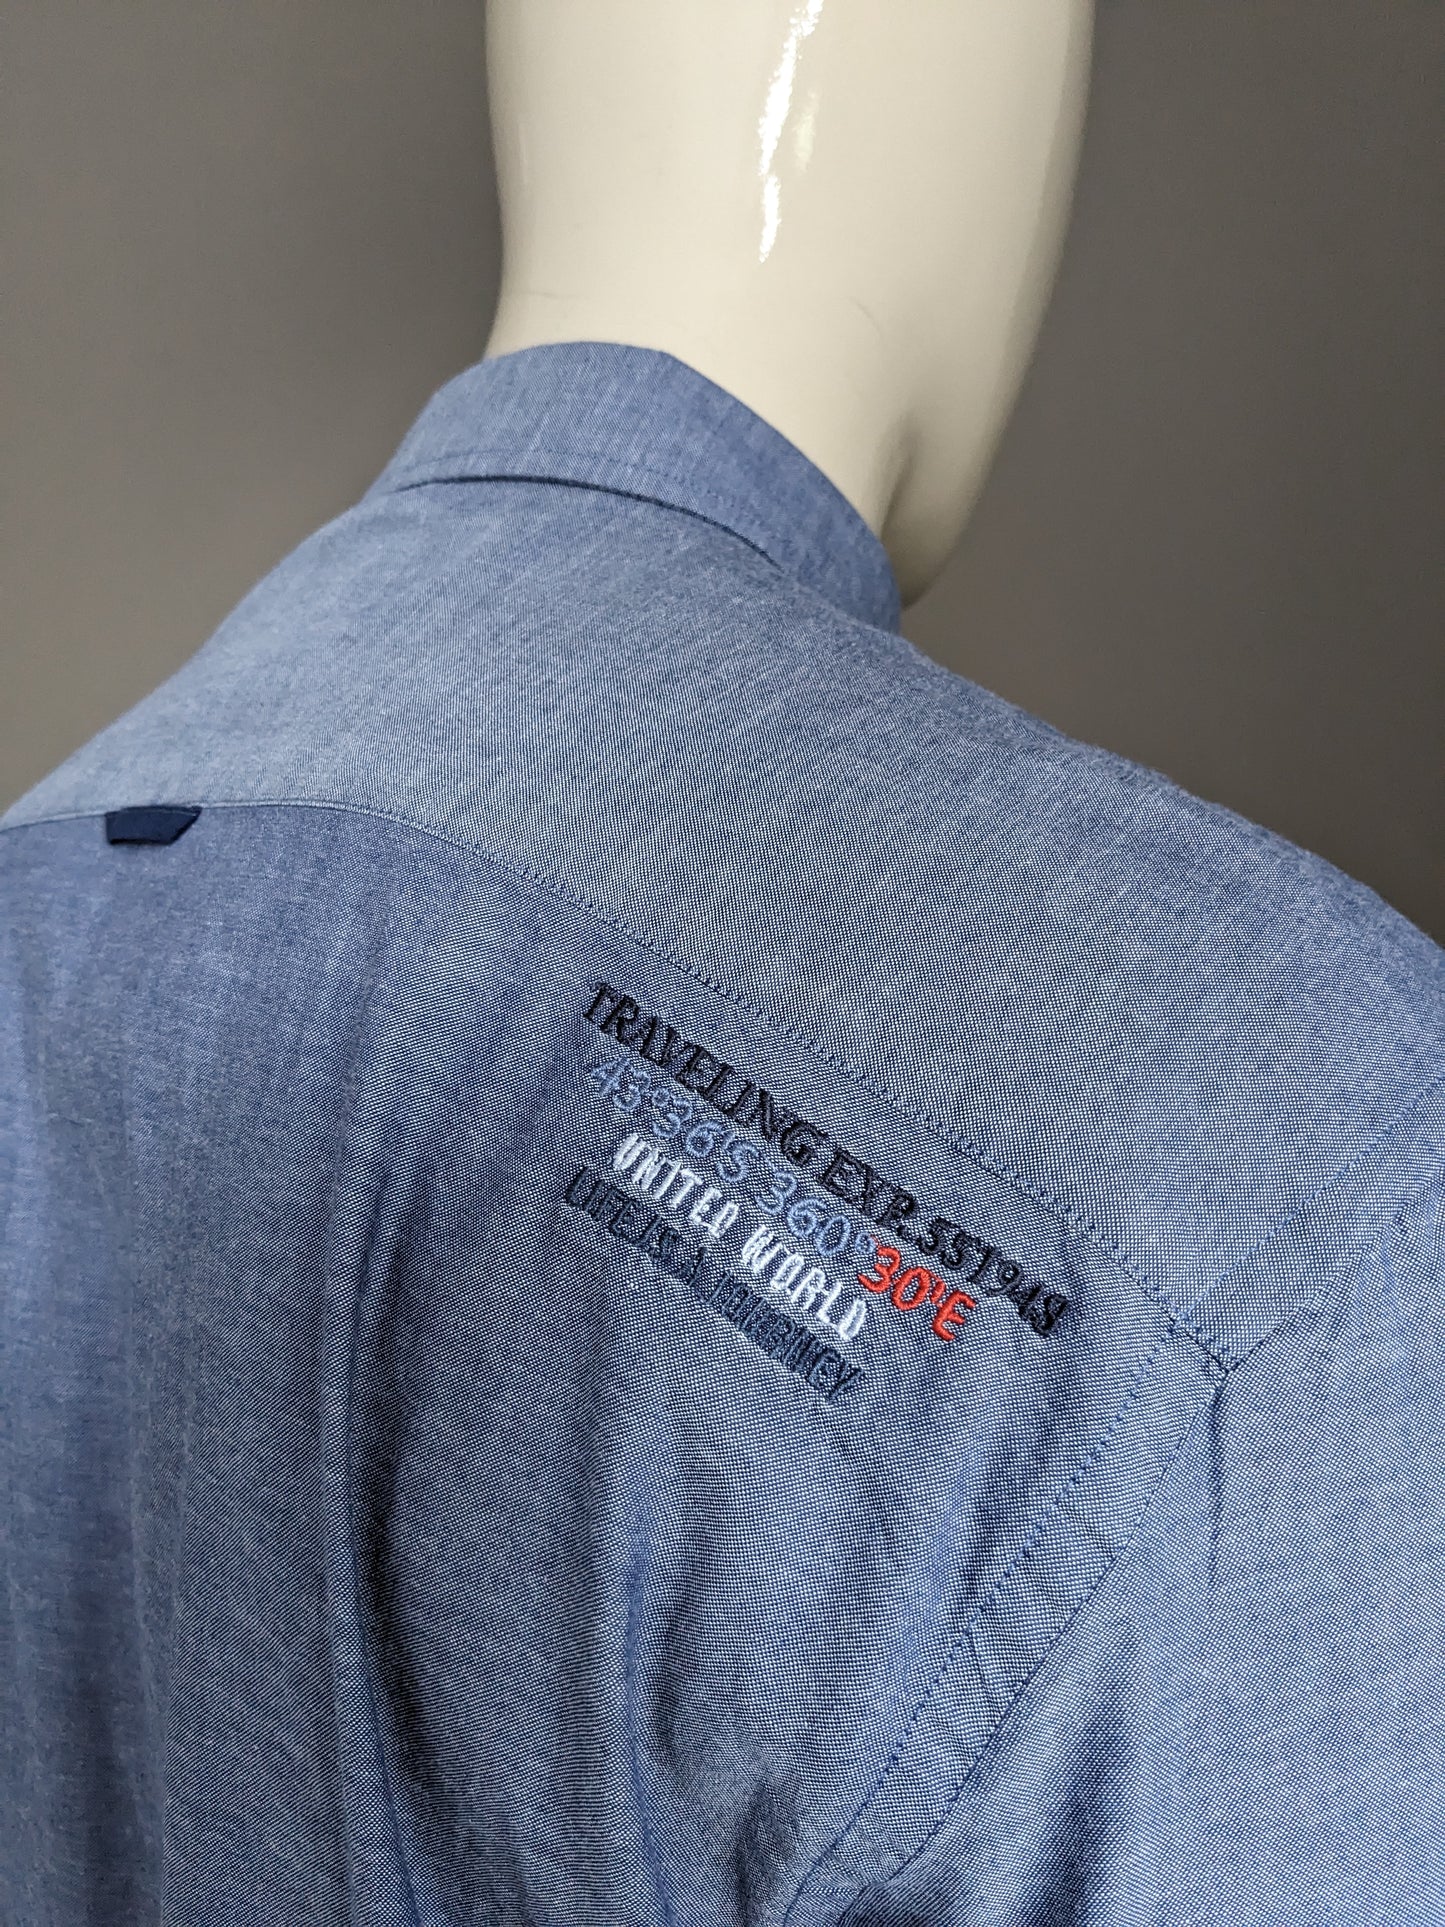 Schneider & Sohn -Shirt. Blau gemischt mit Anwendungen. Größe 2xl / xxl.